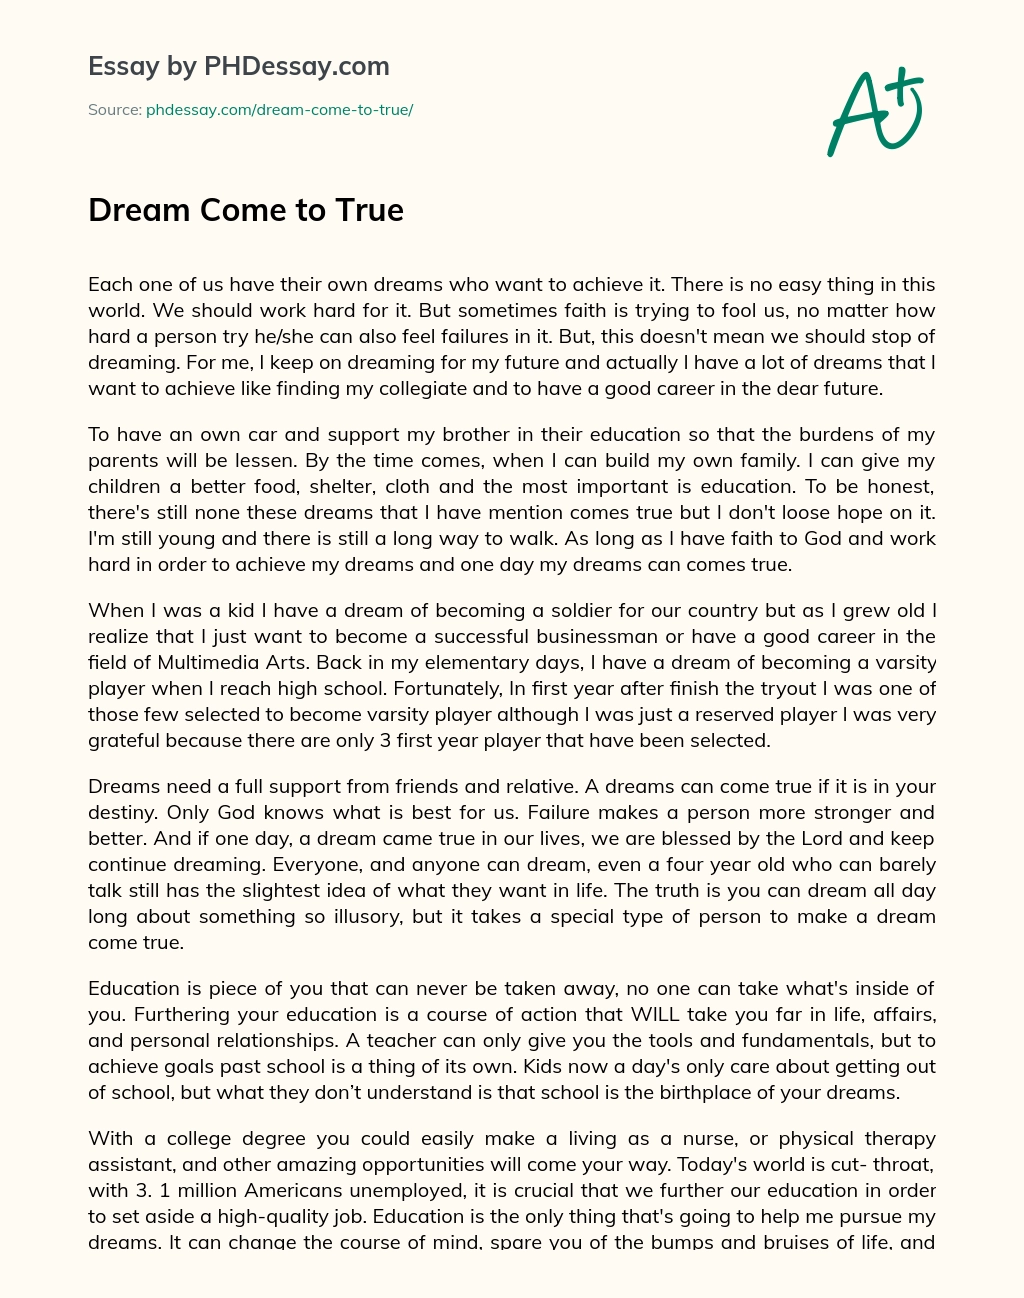 Dream Come to True essay